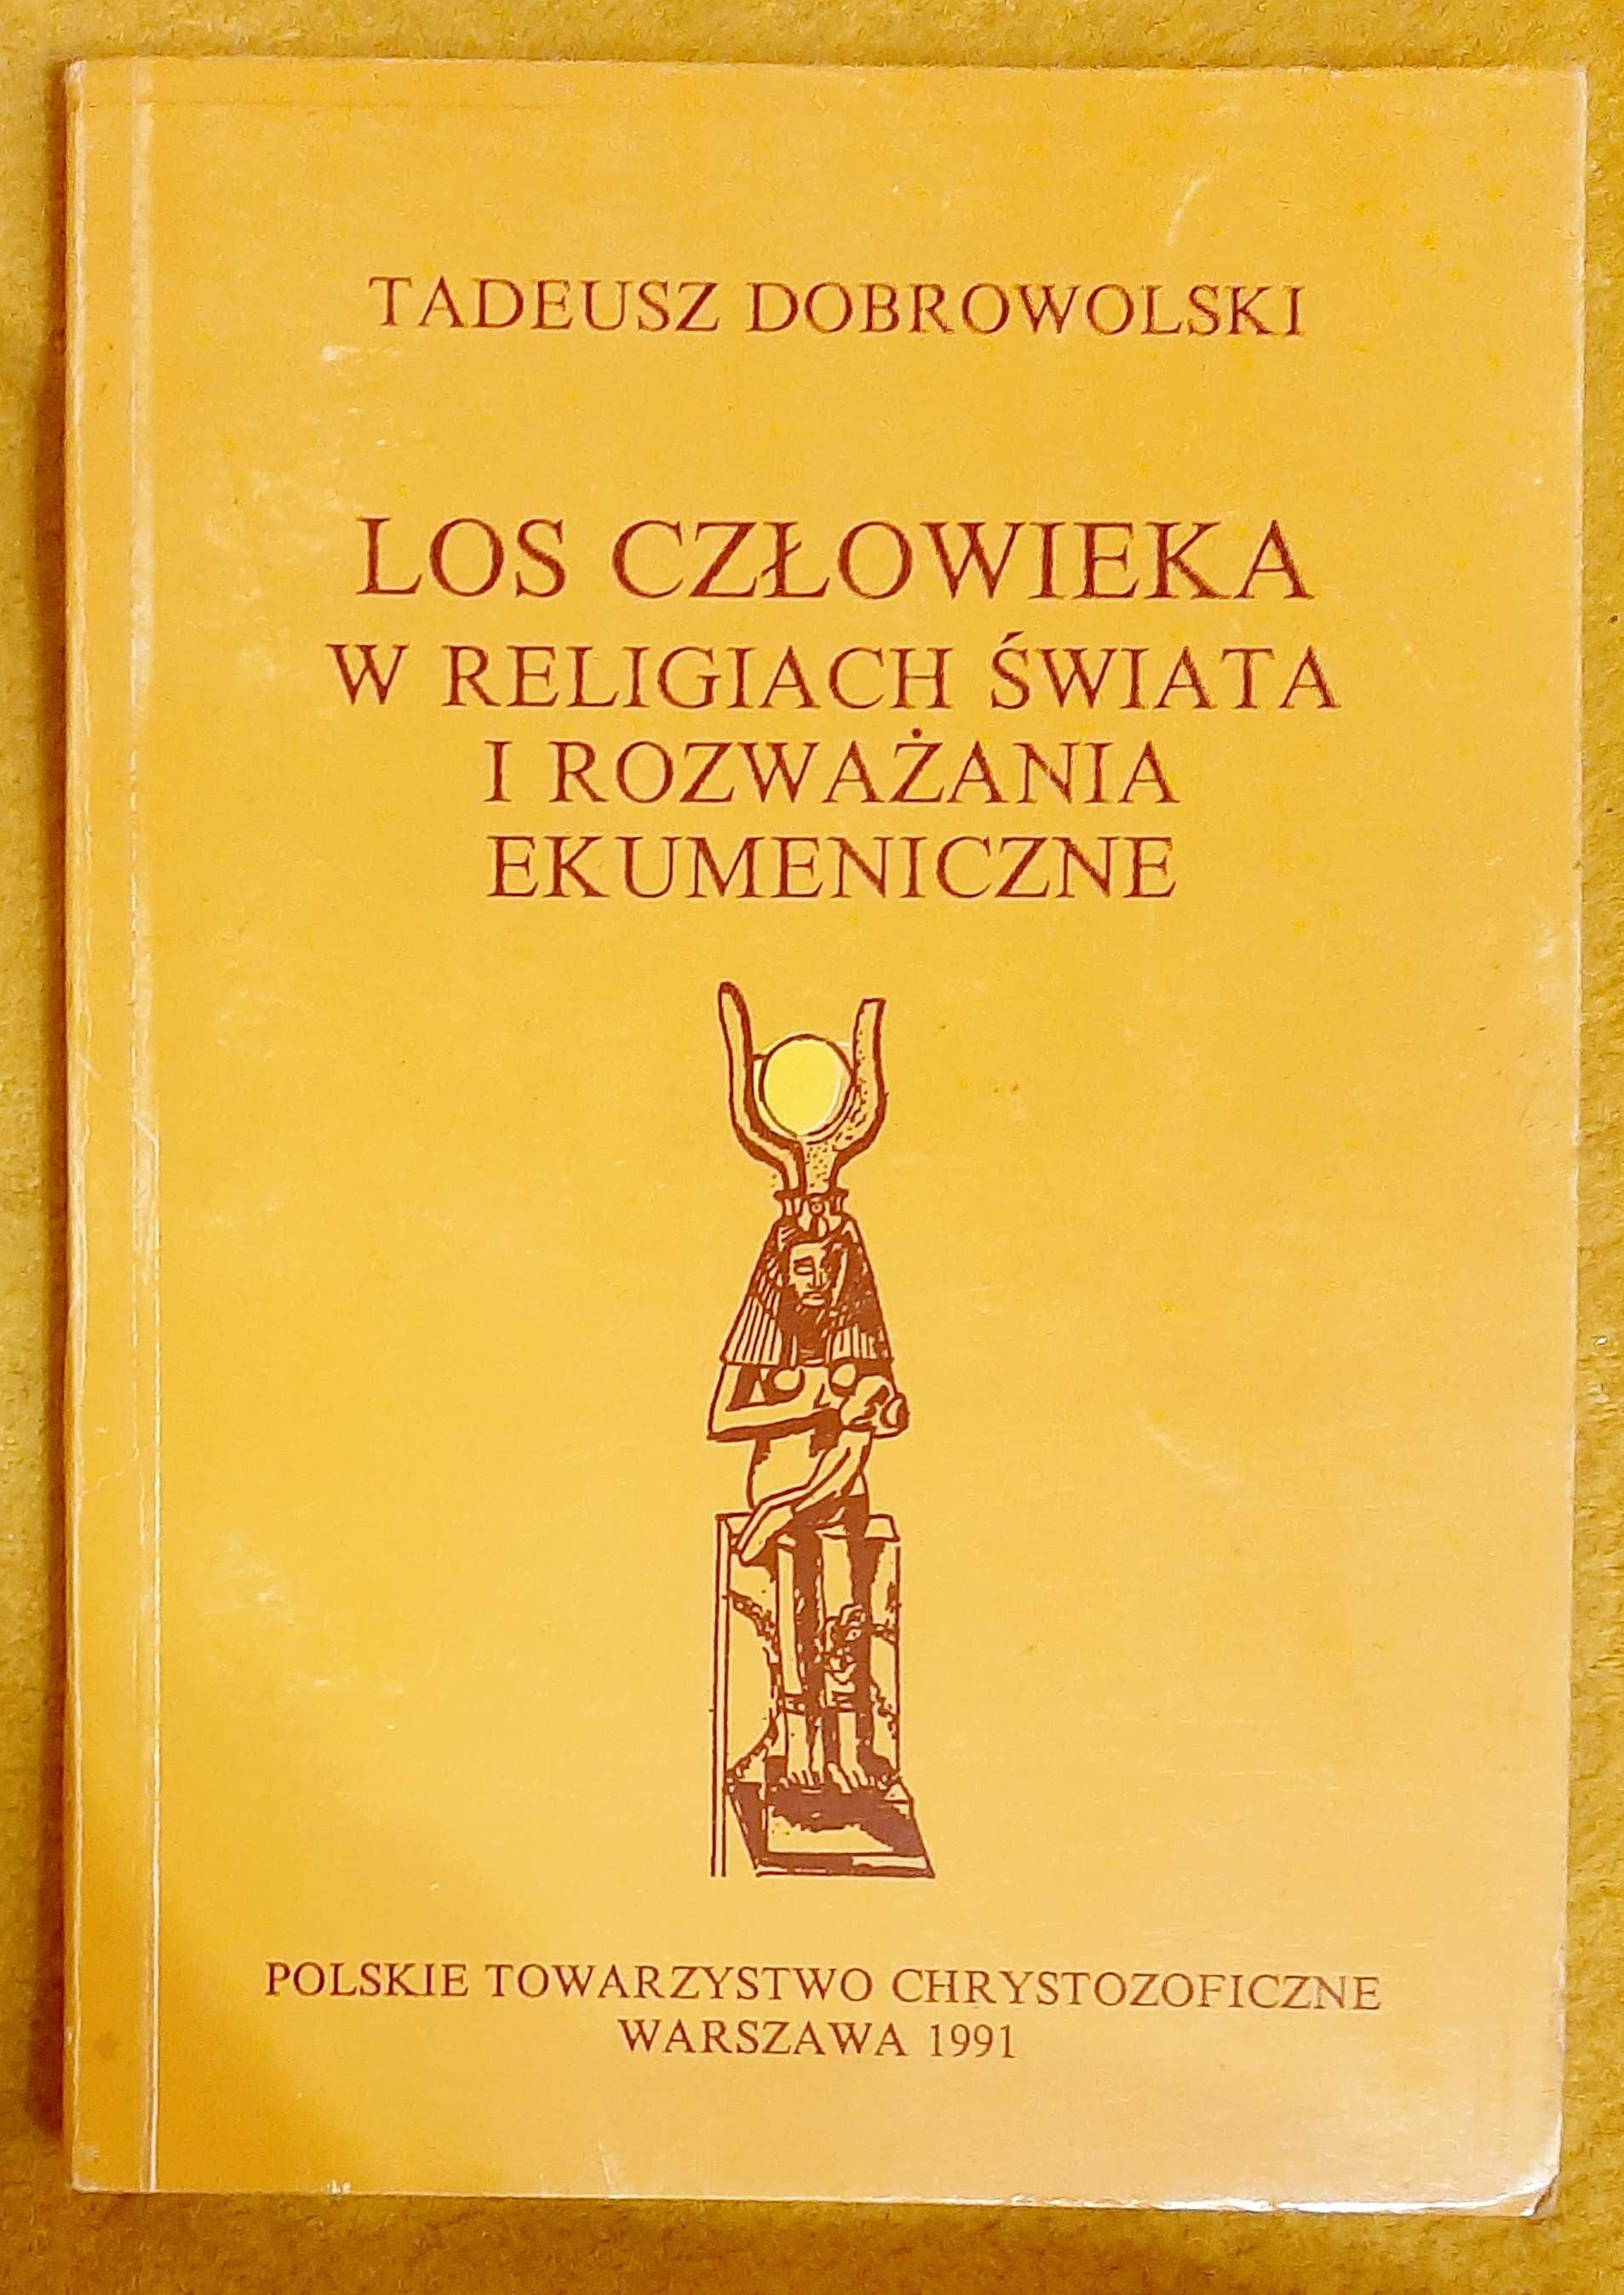 T. Dobrowolski, Los człowieka w religiach świata